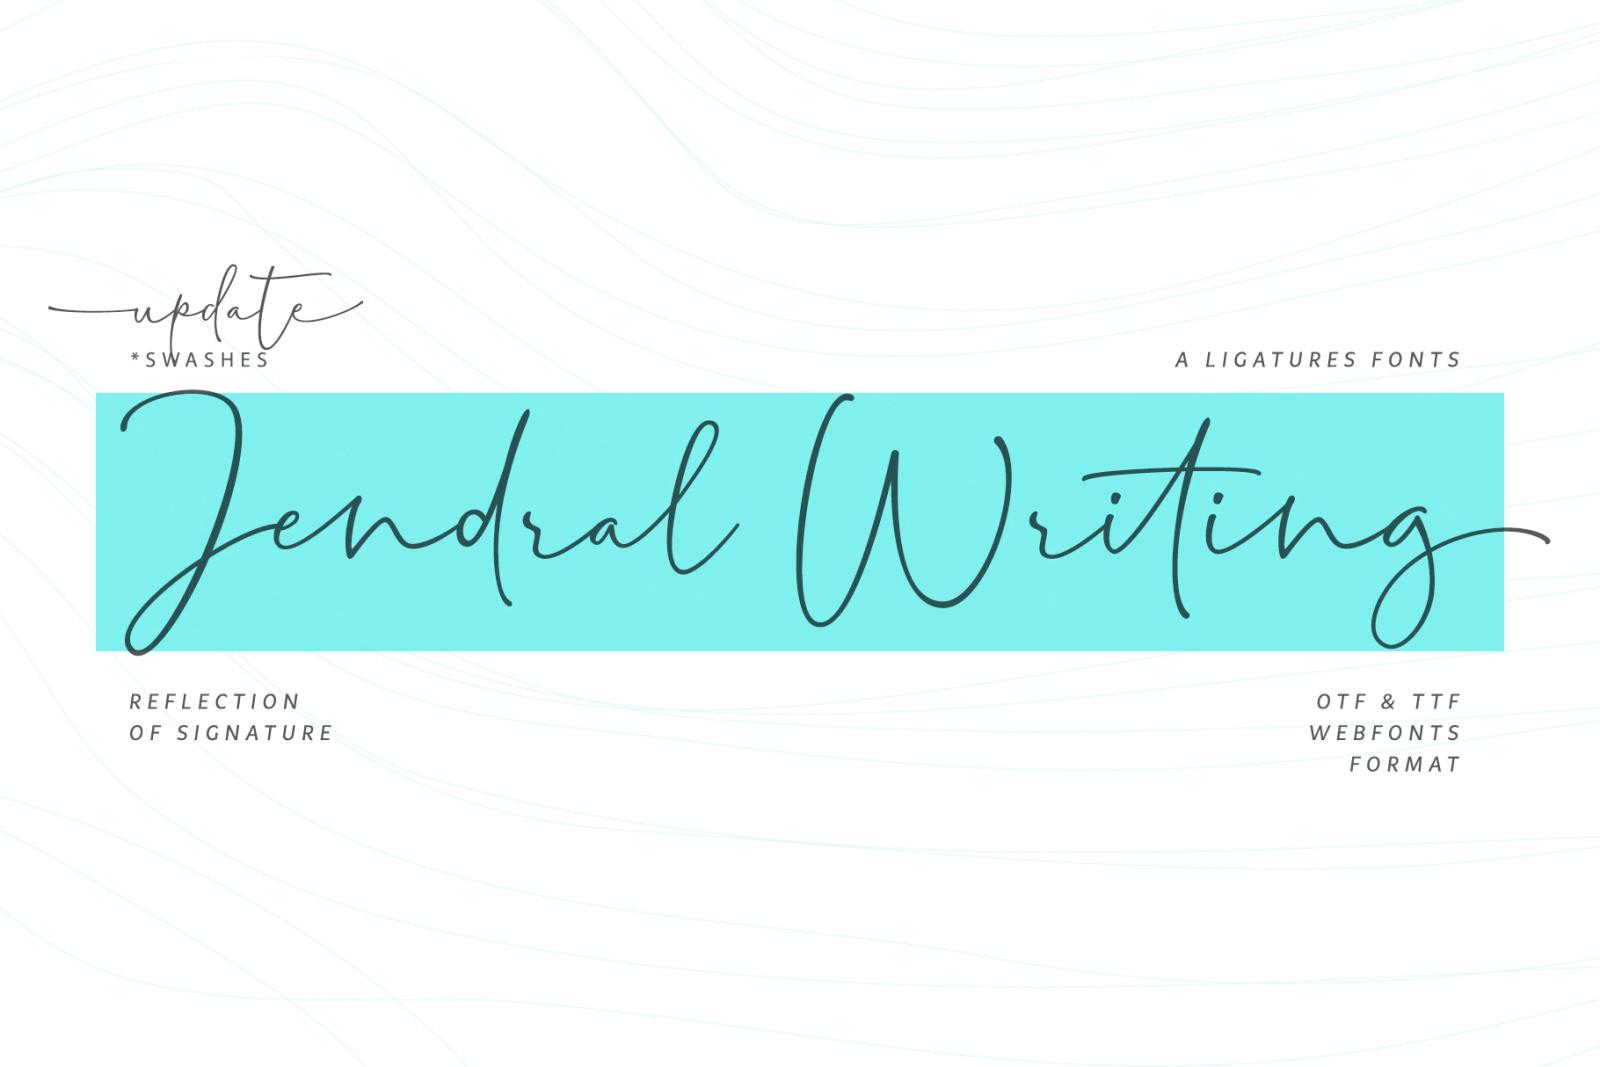 Jendral Writing Font